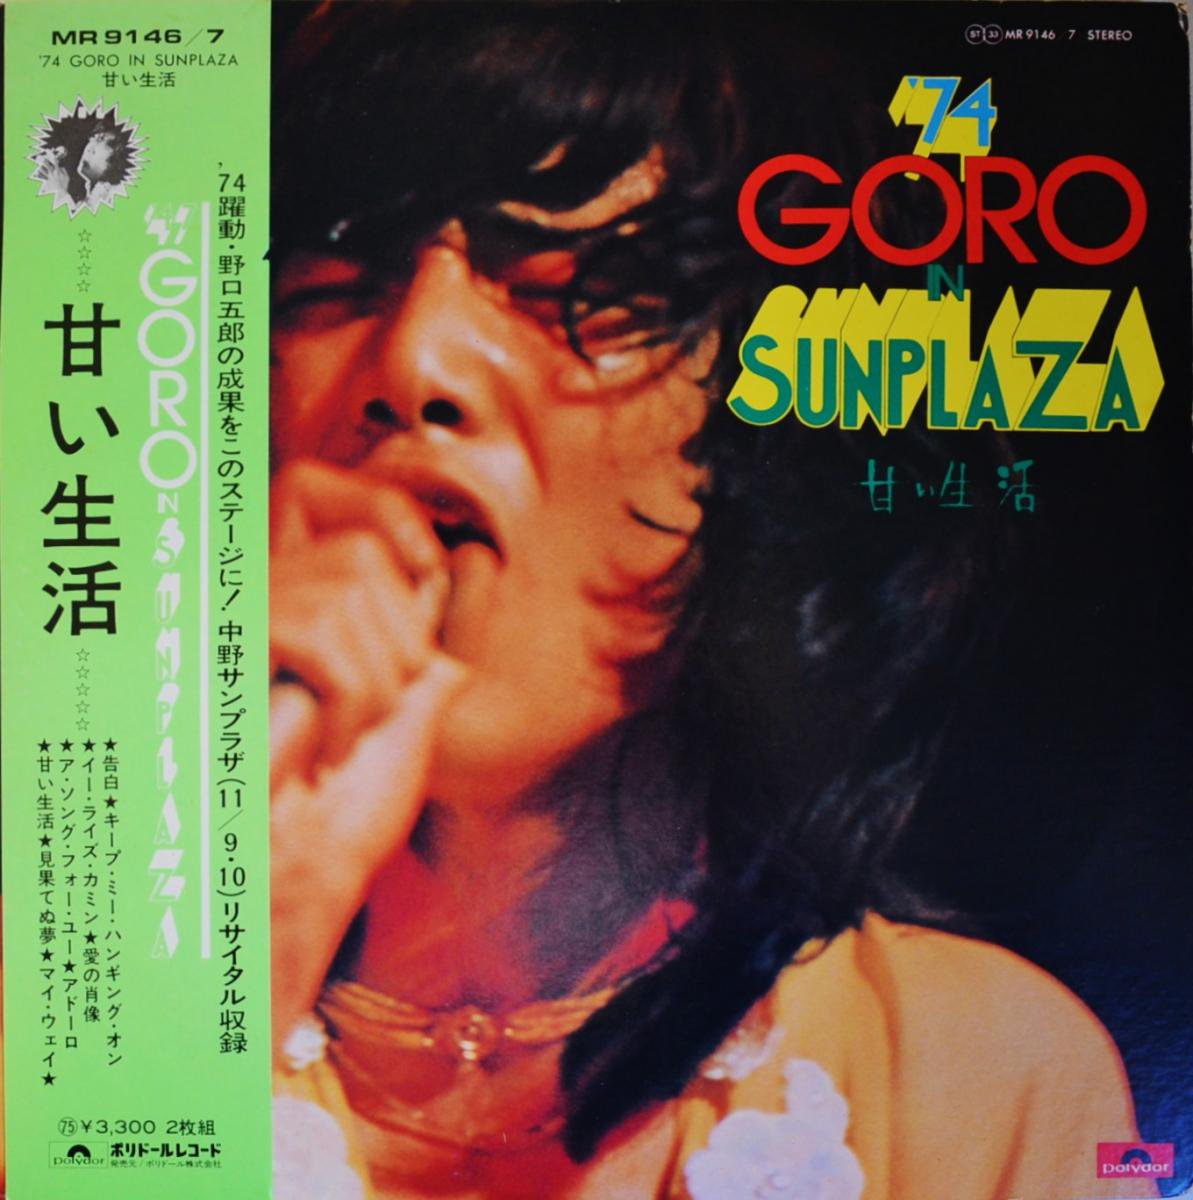 Ϻ GORO NOGUCHI / '74 GORO IN SUNPLAZA / Ť (2LP)